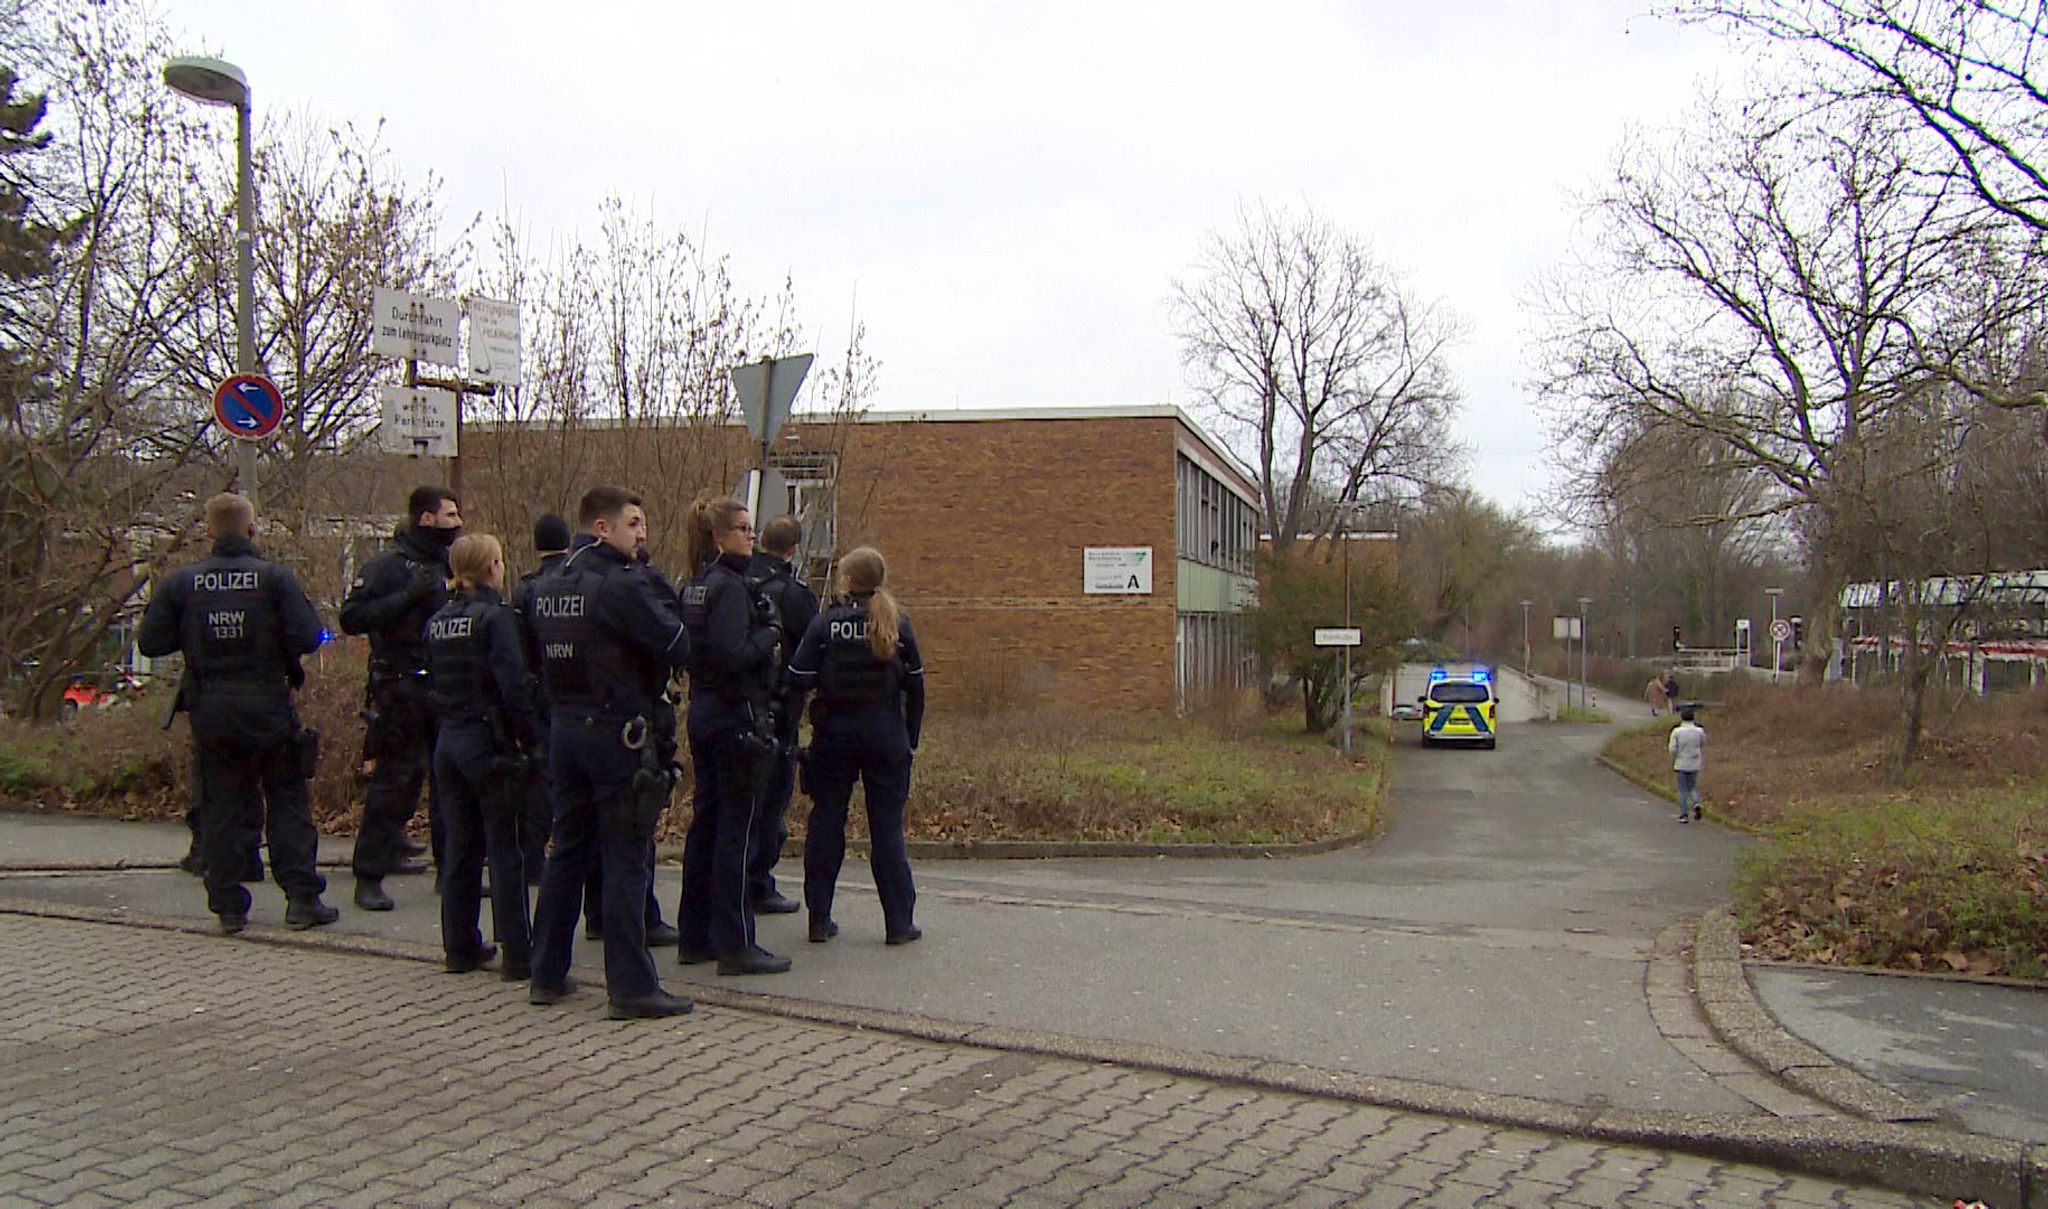 Amoklauf an Schule? Polizei Großeinsatz in Dortmunder Schule – Täter flüchtig!